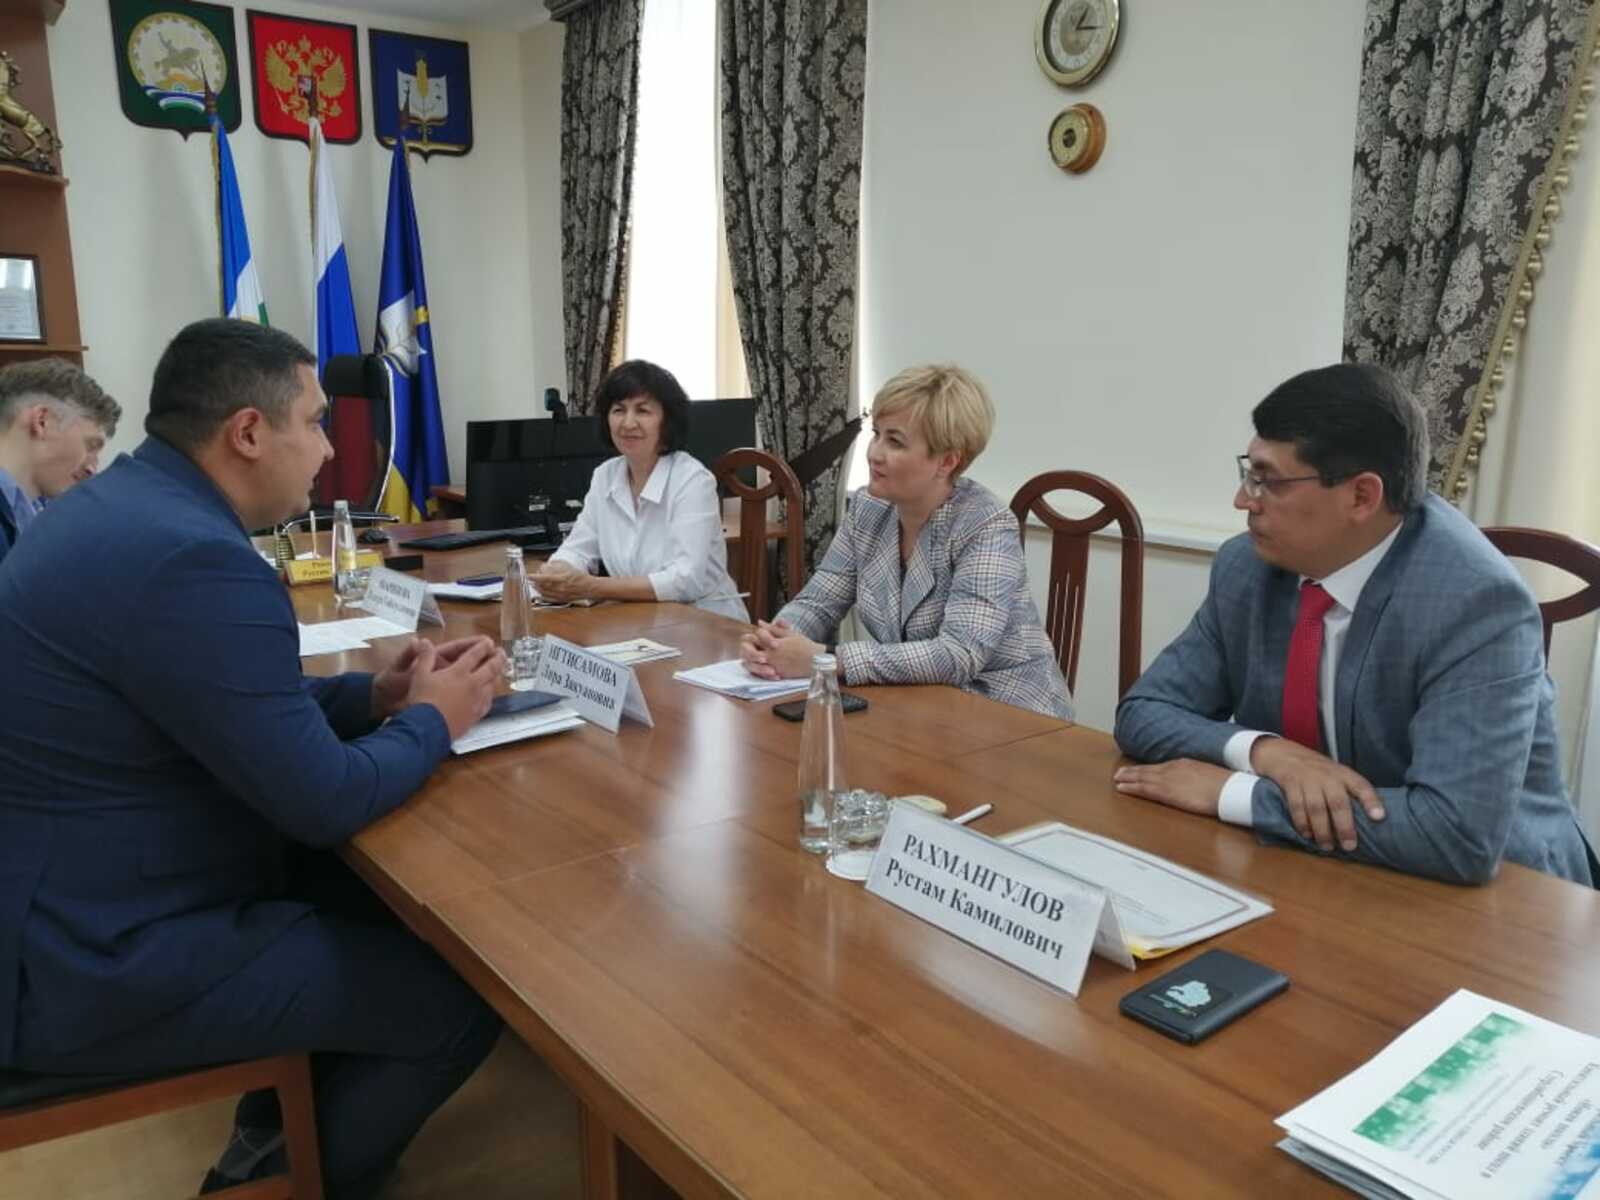 Стерлибашевцы на встрече с министром обсудили актуальные вопросы